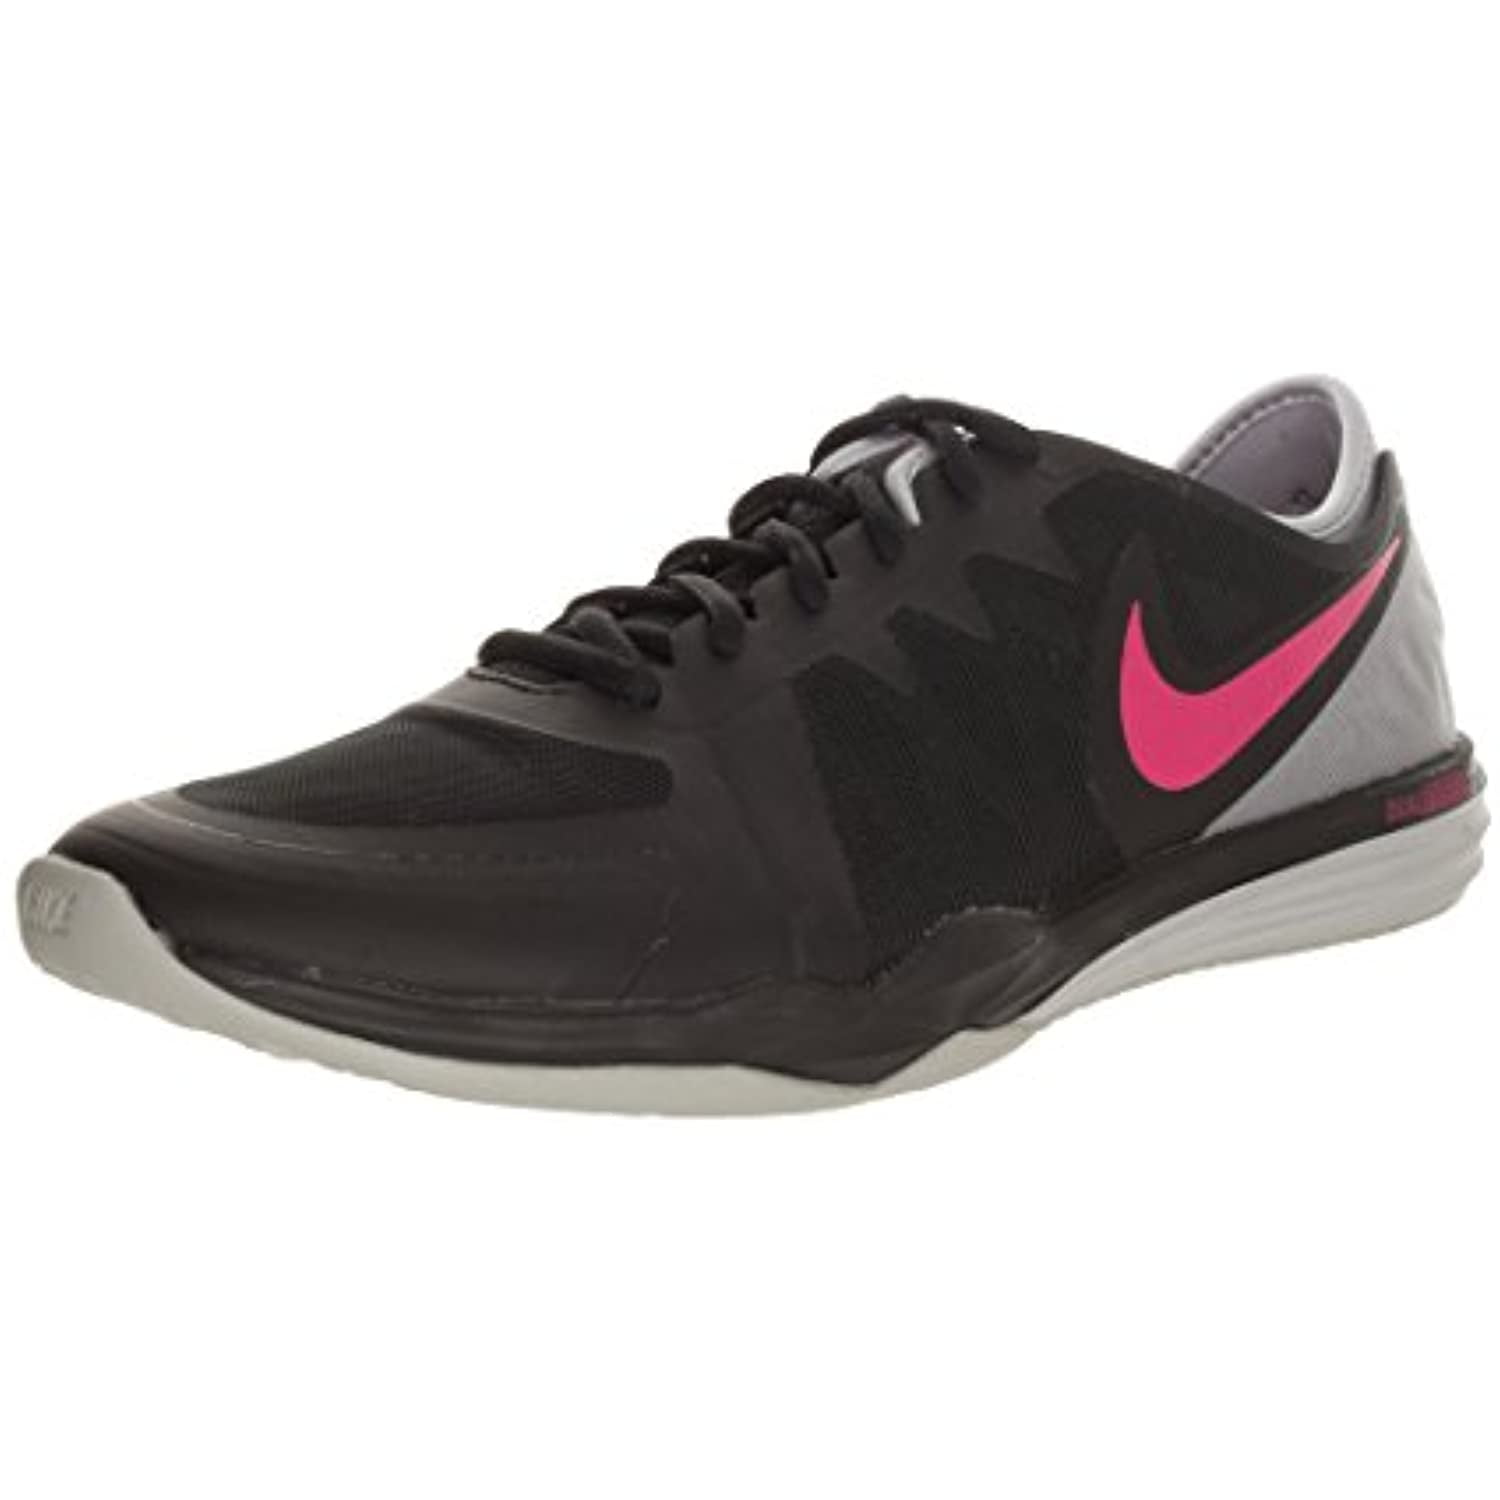 Nike Women's Fusion Tr Training Shoe - Walmart.com